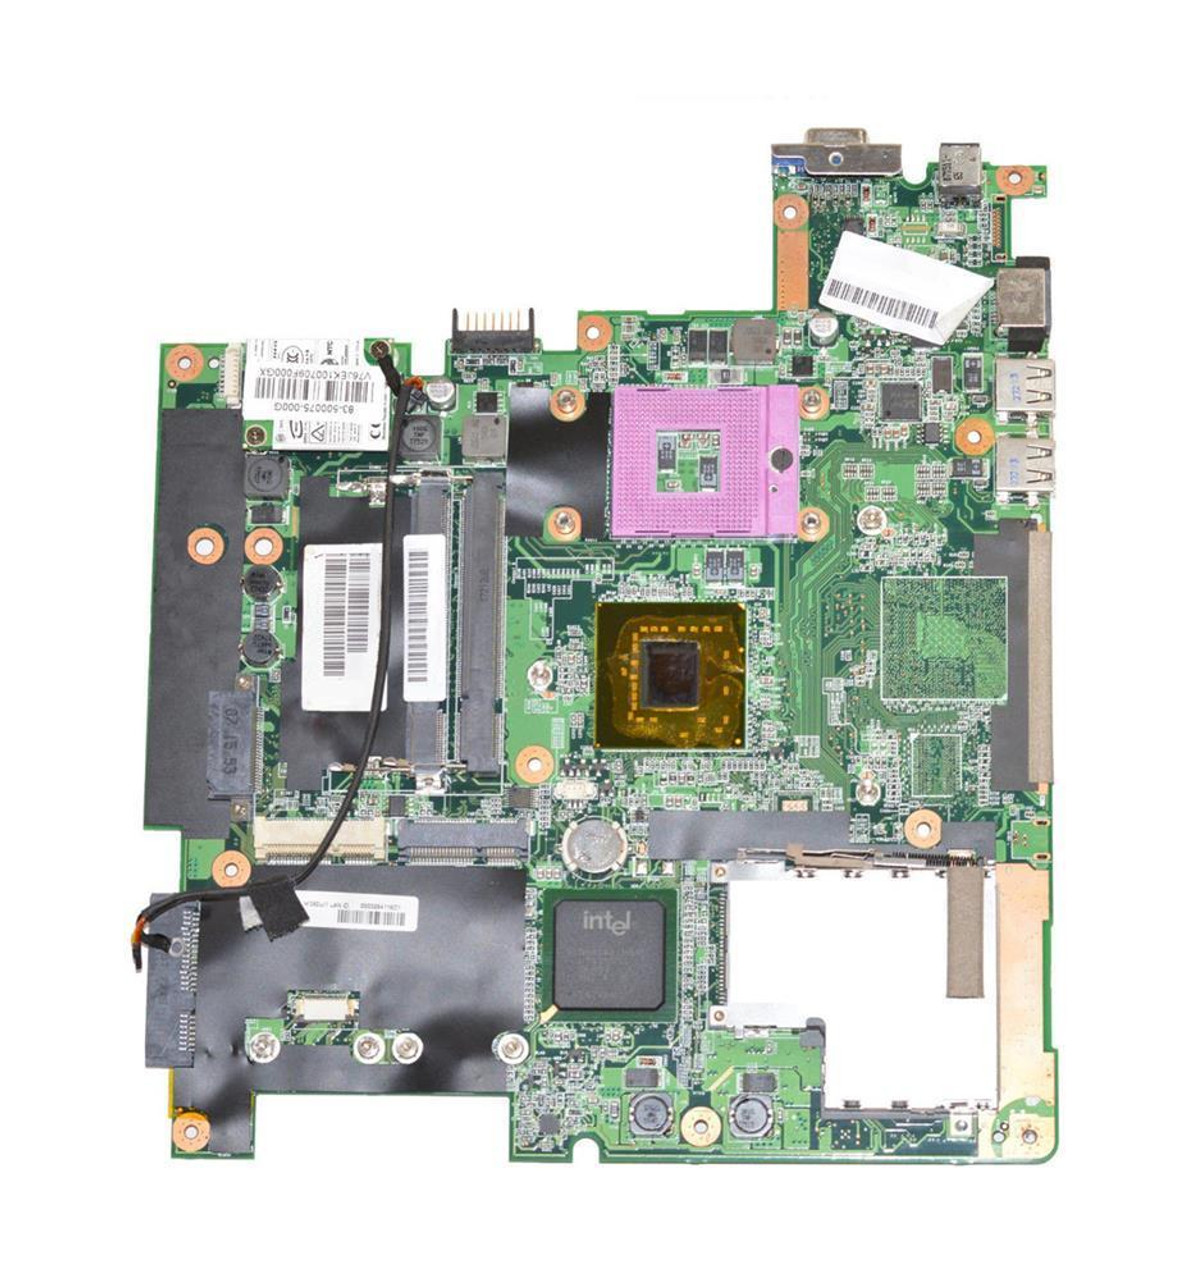 40GAB1700E502 Gateway System Board (Motherboard) for W6501 (Refurbished)